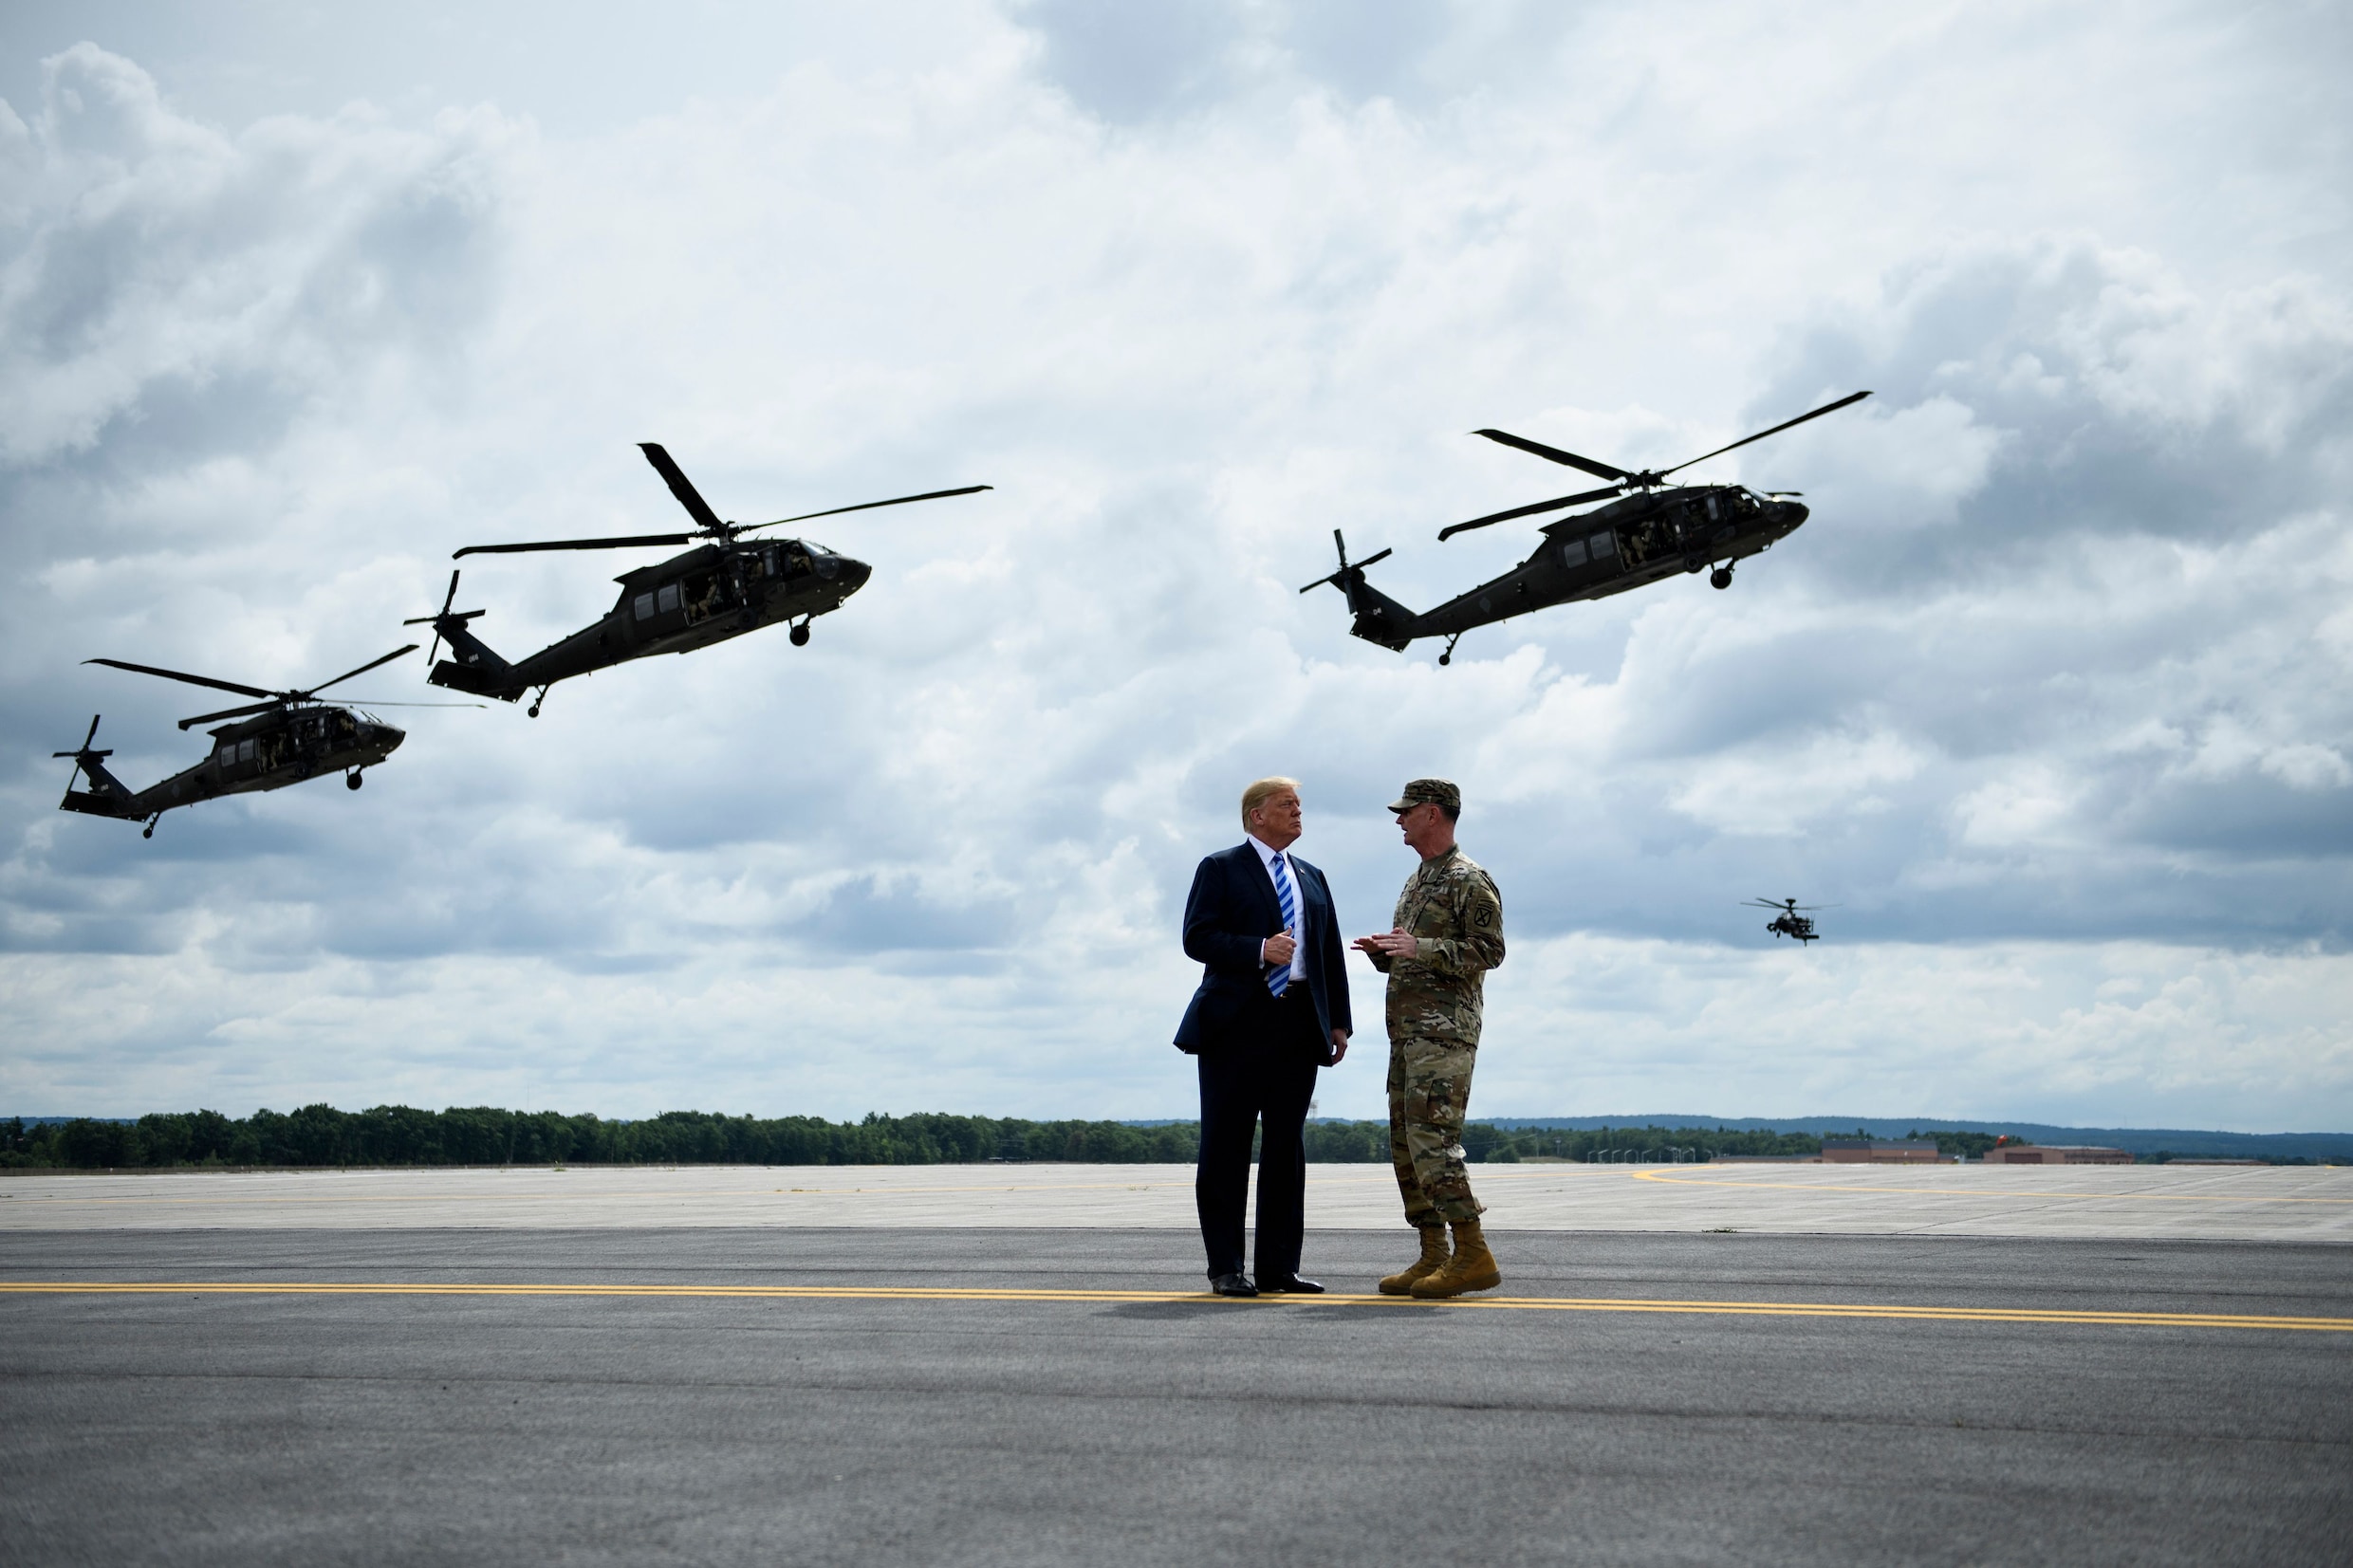 Trump keurt defensiebudget van 716 miljard dollar goed: "Meest significante investering in ons leger en onze soldaten uit de moderne geschiedenis"